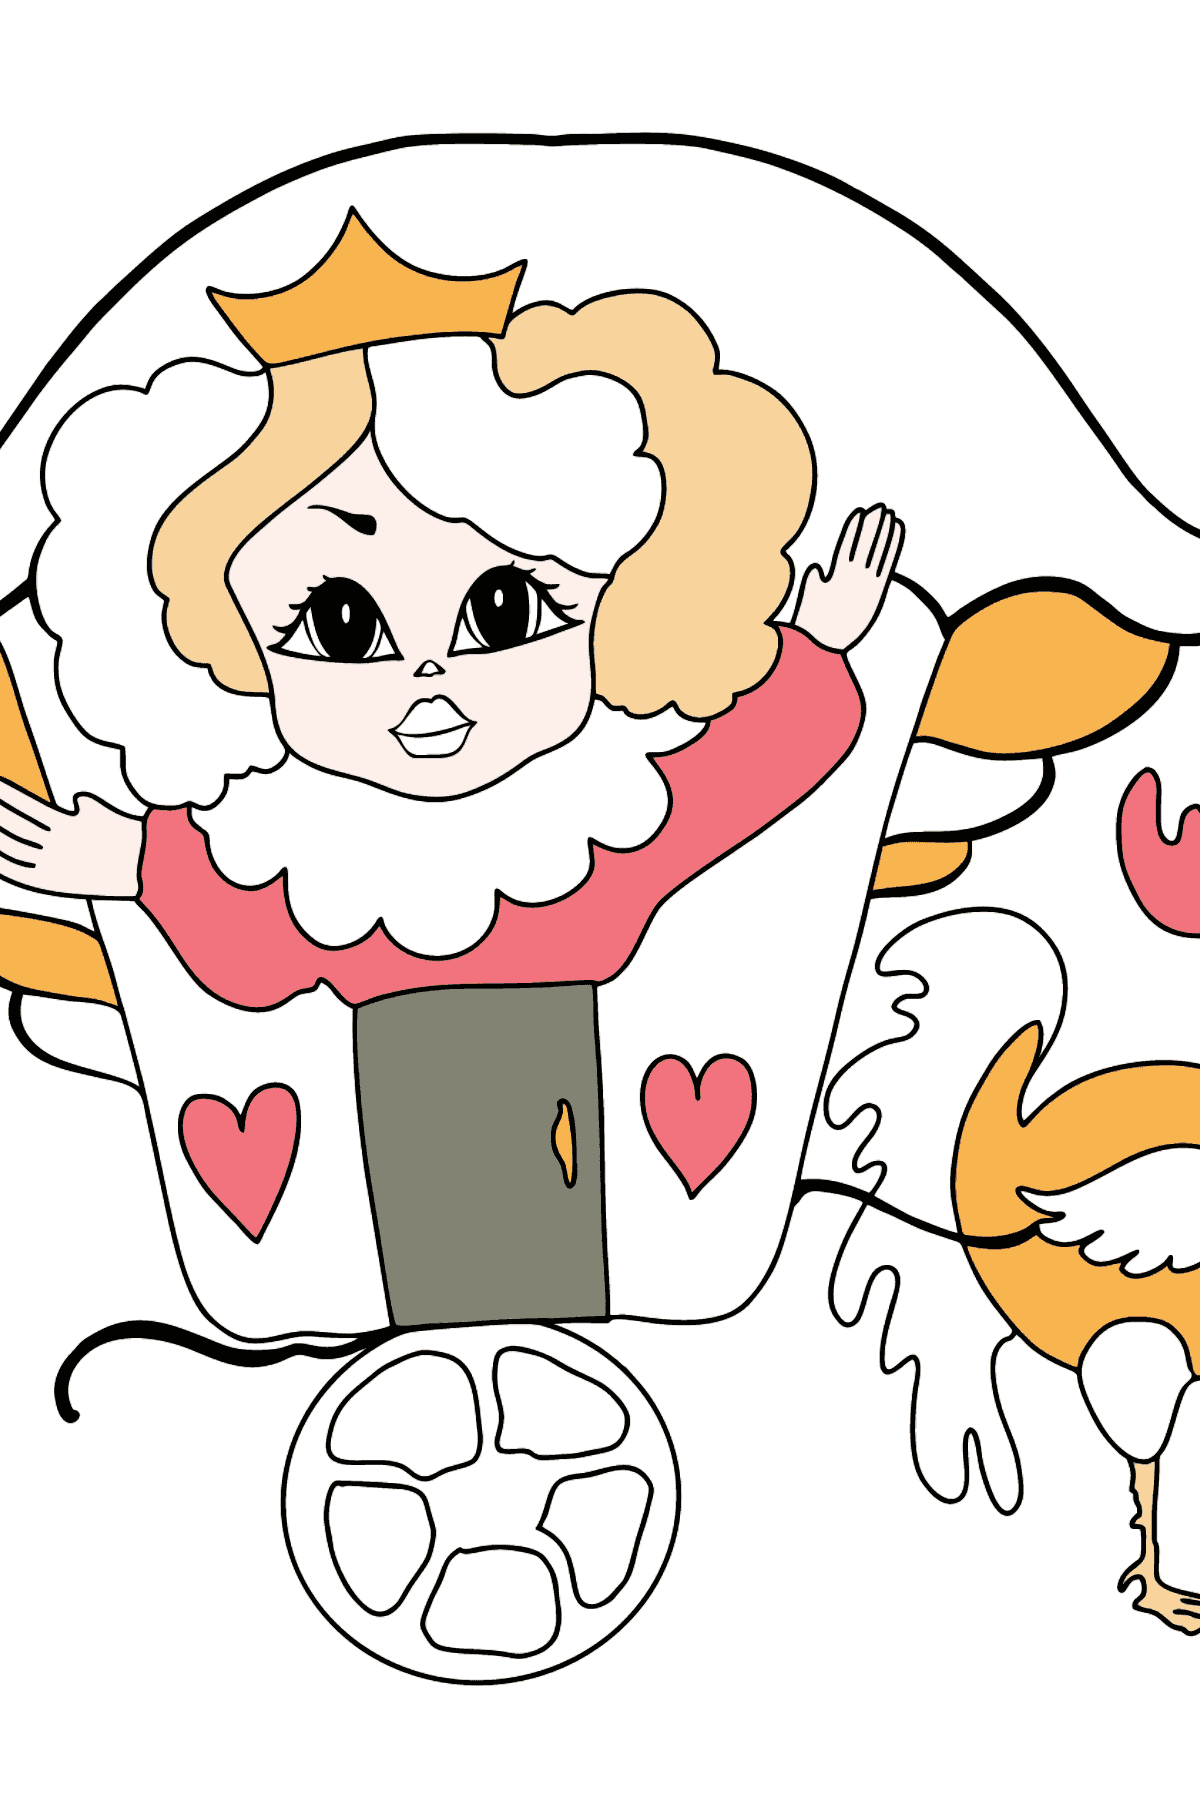 Веселая Принцесса Раскраска - Картинки для Детей